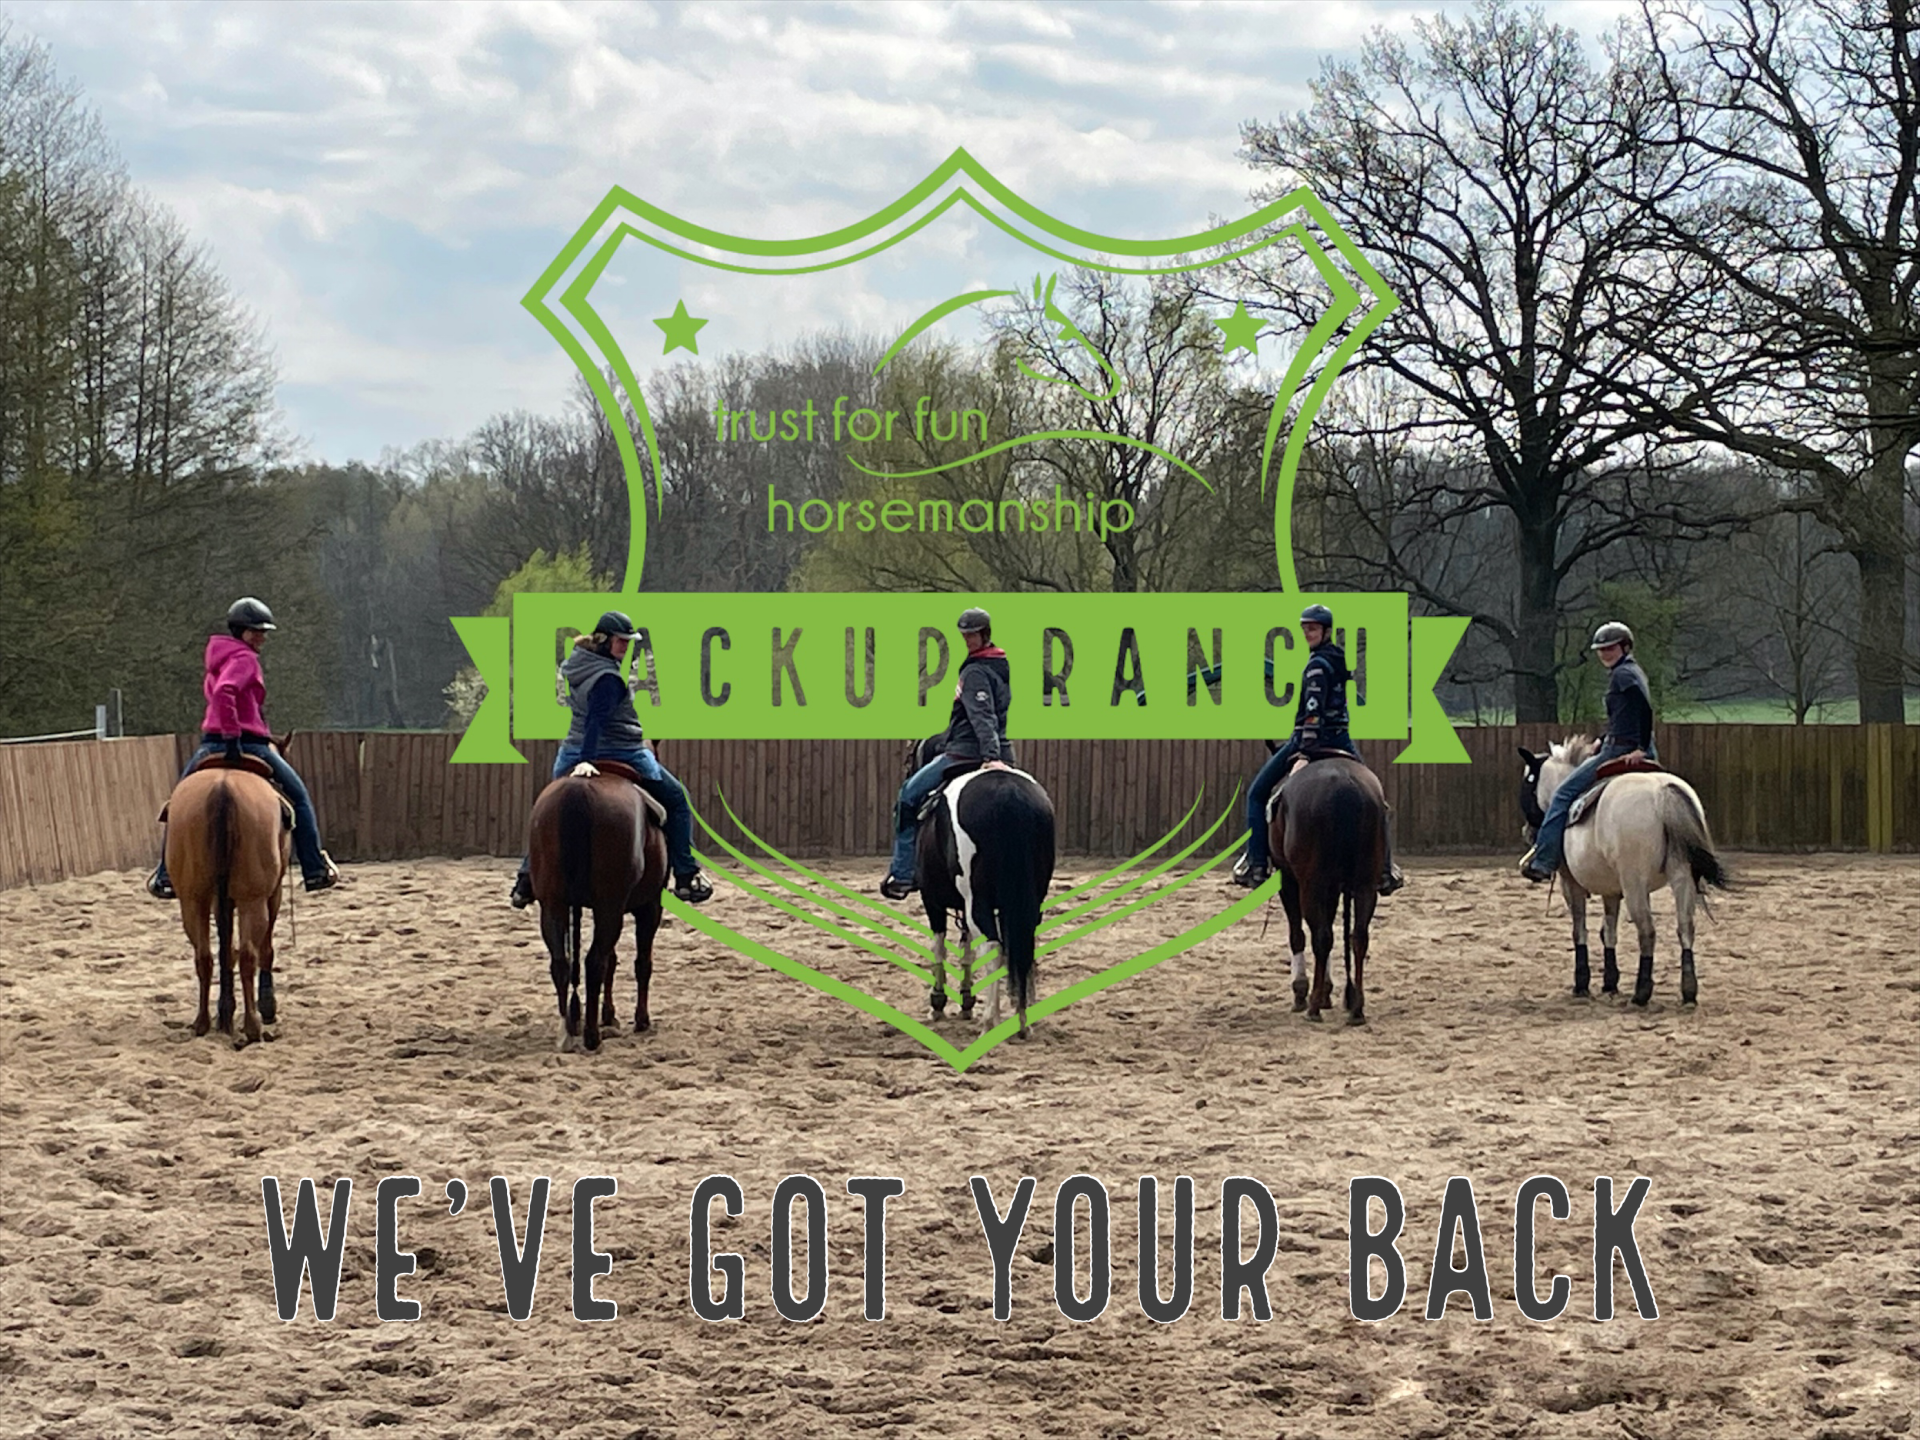 Das Trust for Fun Horsemanship Team der Backup Ranch trainiert nach der Clinton Anderson Methode Downunder Horsemanship in Deutschland.